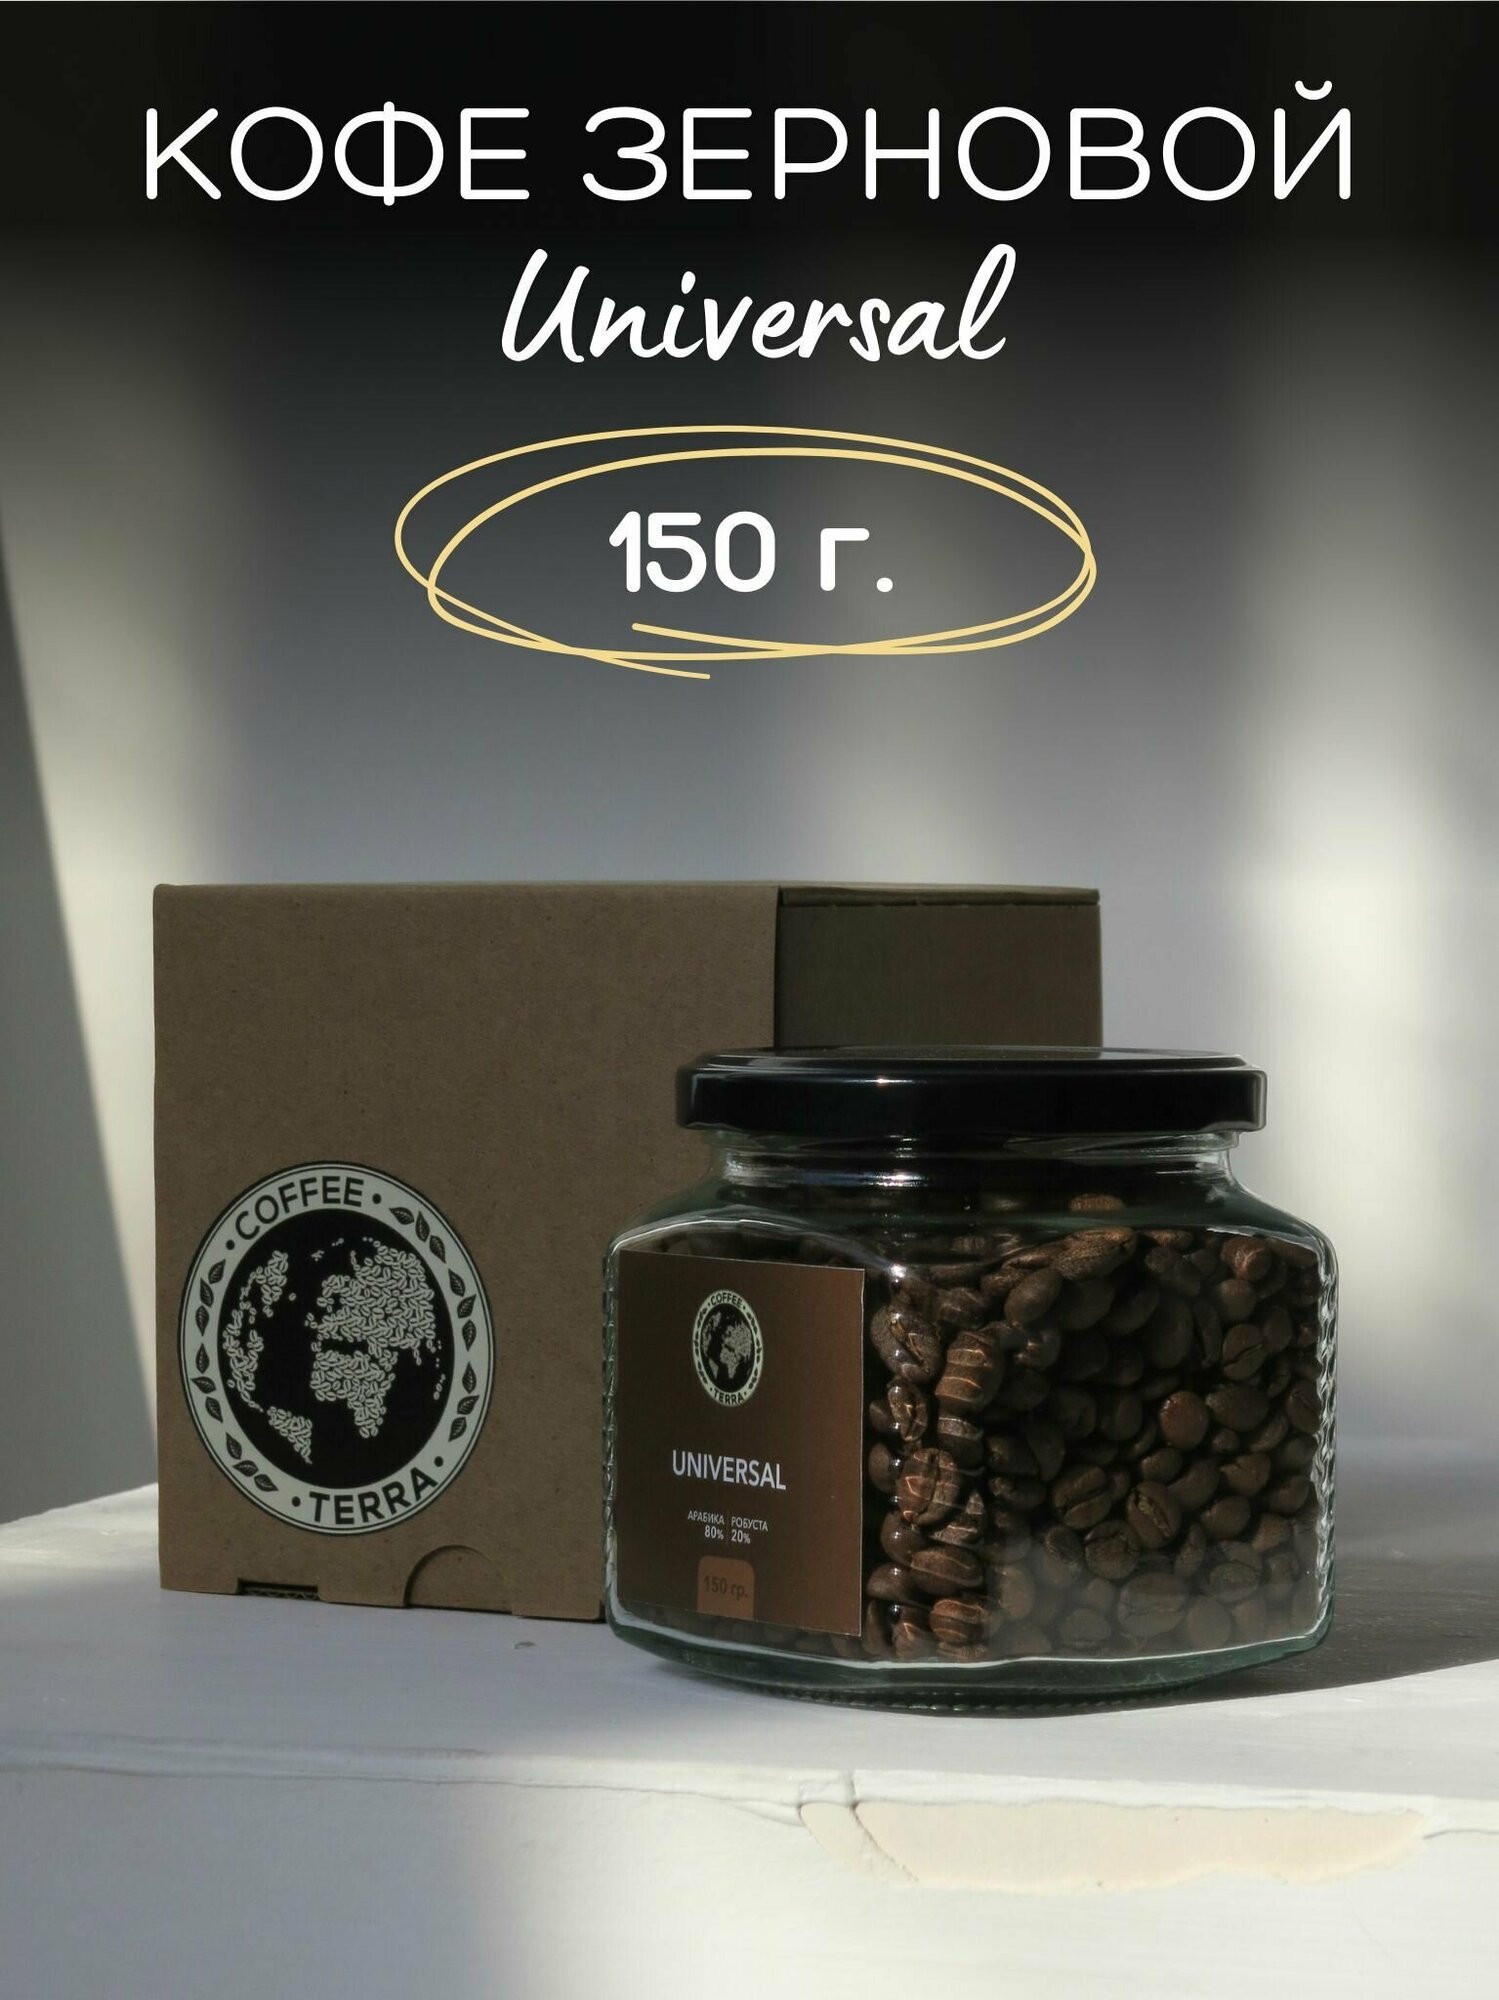 Кофе зерно Арабика Робуста смесь Universal в банке